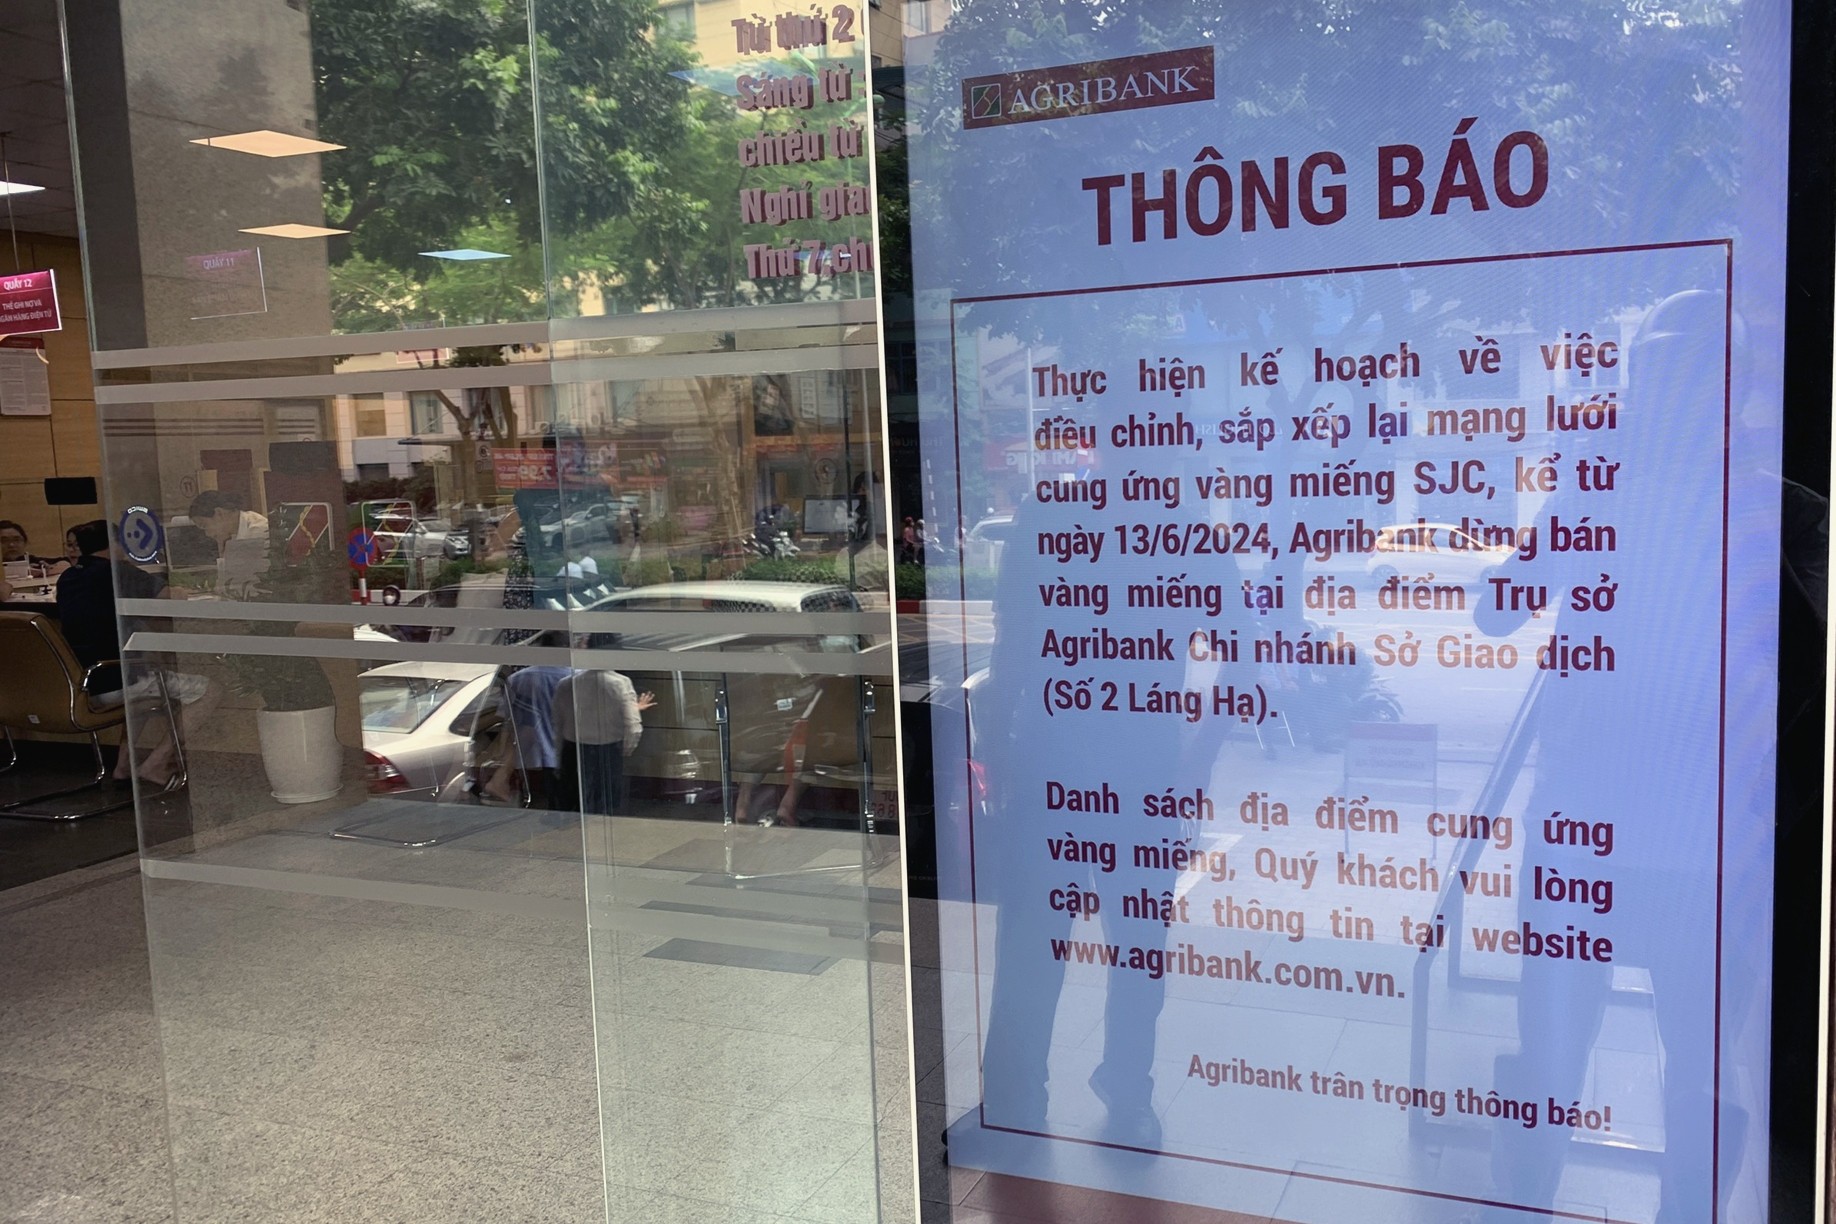 



Agirbank thông báo đóng cửa điểm bán số 2 Láng Hạ (Hà Nội) để triển khai tiện ích trực tuyến từ ngày 17/6

